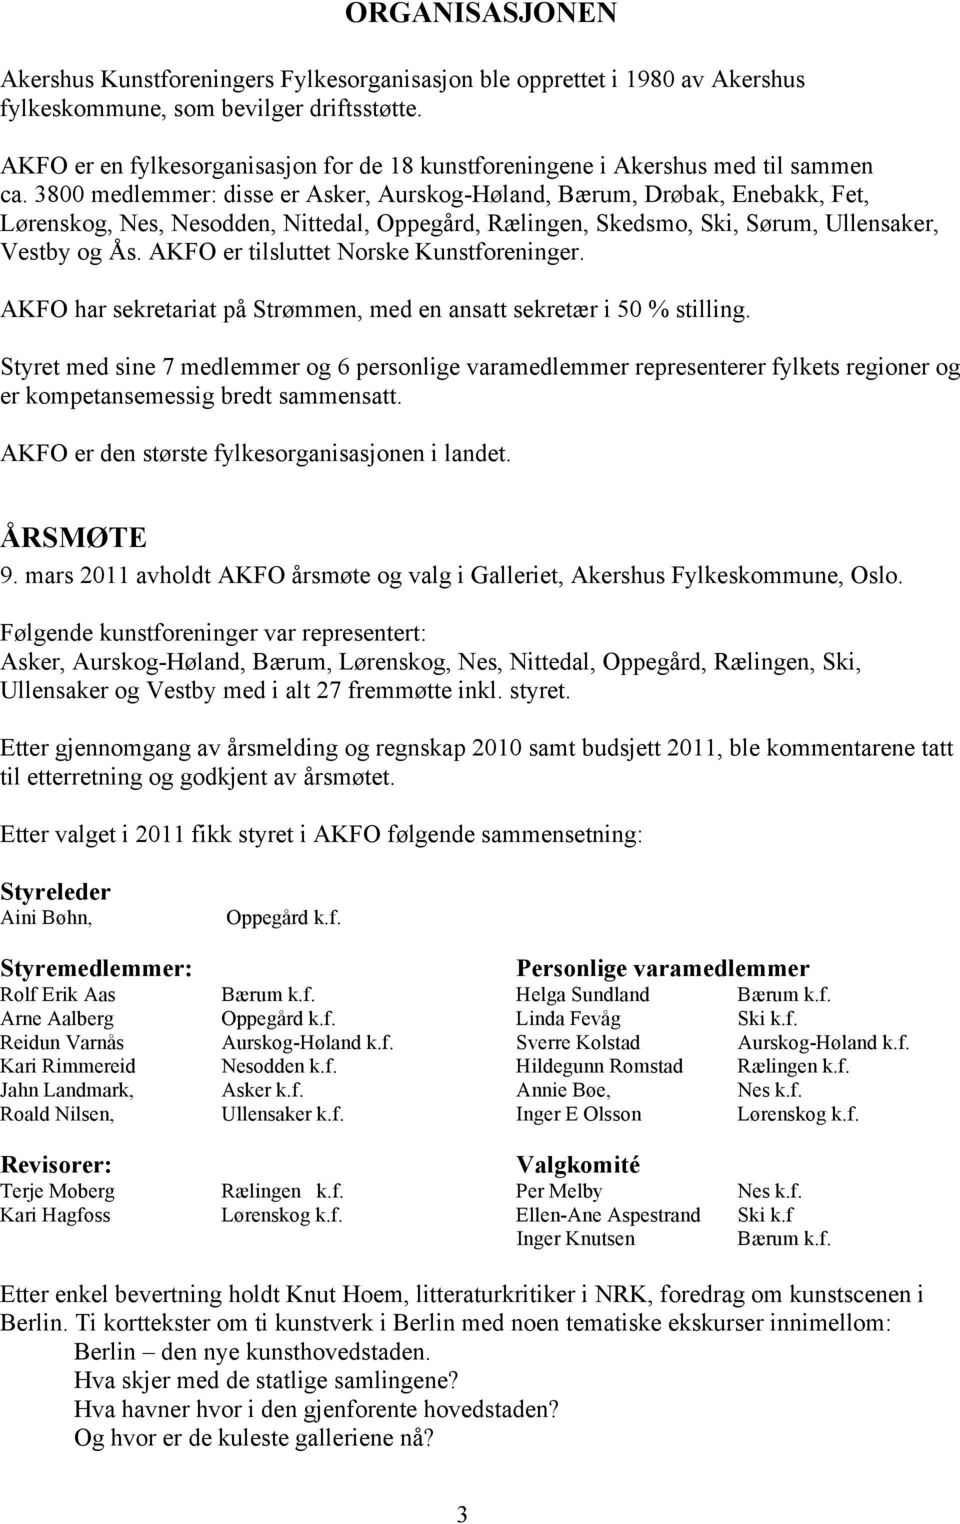 3800 medlemmer: disse er Asker, Aurskog-Høland, Bærum, Drøbak, Enebakk, Fet, Lørenskog, Nes, Nesodden, Nittedal, Oppegård, Rælingen, Skedsmo, Ski, Sørum, Ullensaker, Vestby og Ås.